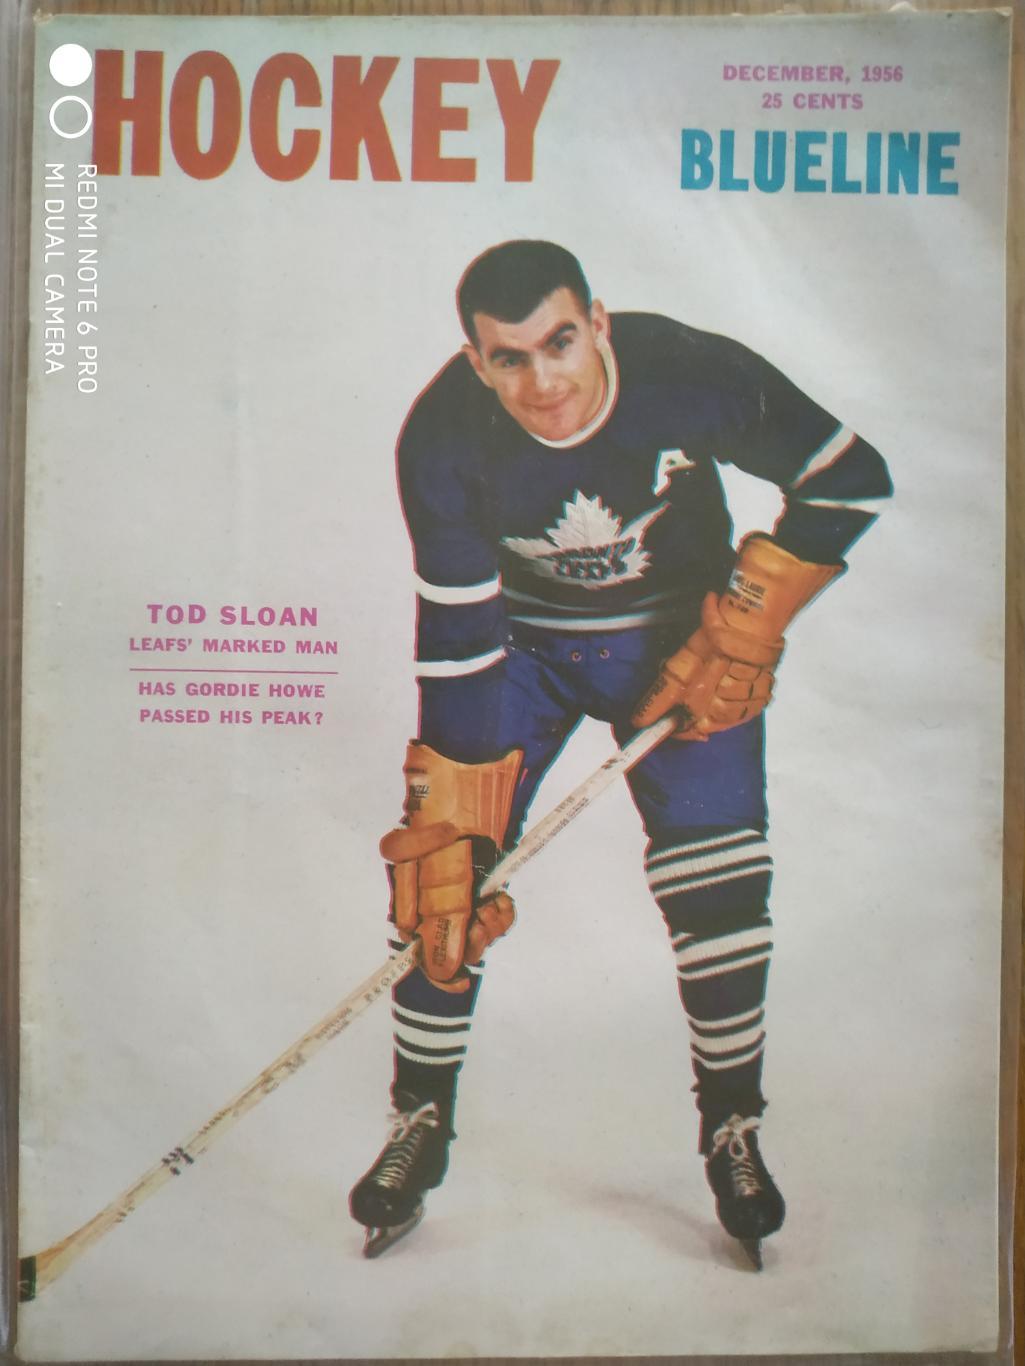 ЖУРНАЛ ЕЖЕМЕСЯЧНИК НХЛ NHL 1956 DECEMBER THE HOCKEY MONTHLY BLUELINE